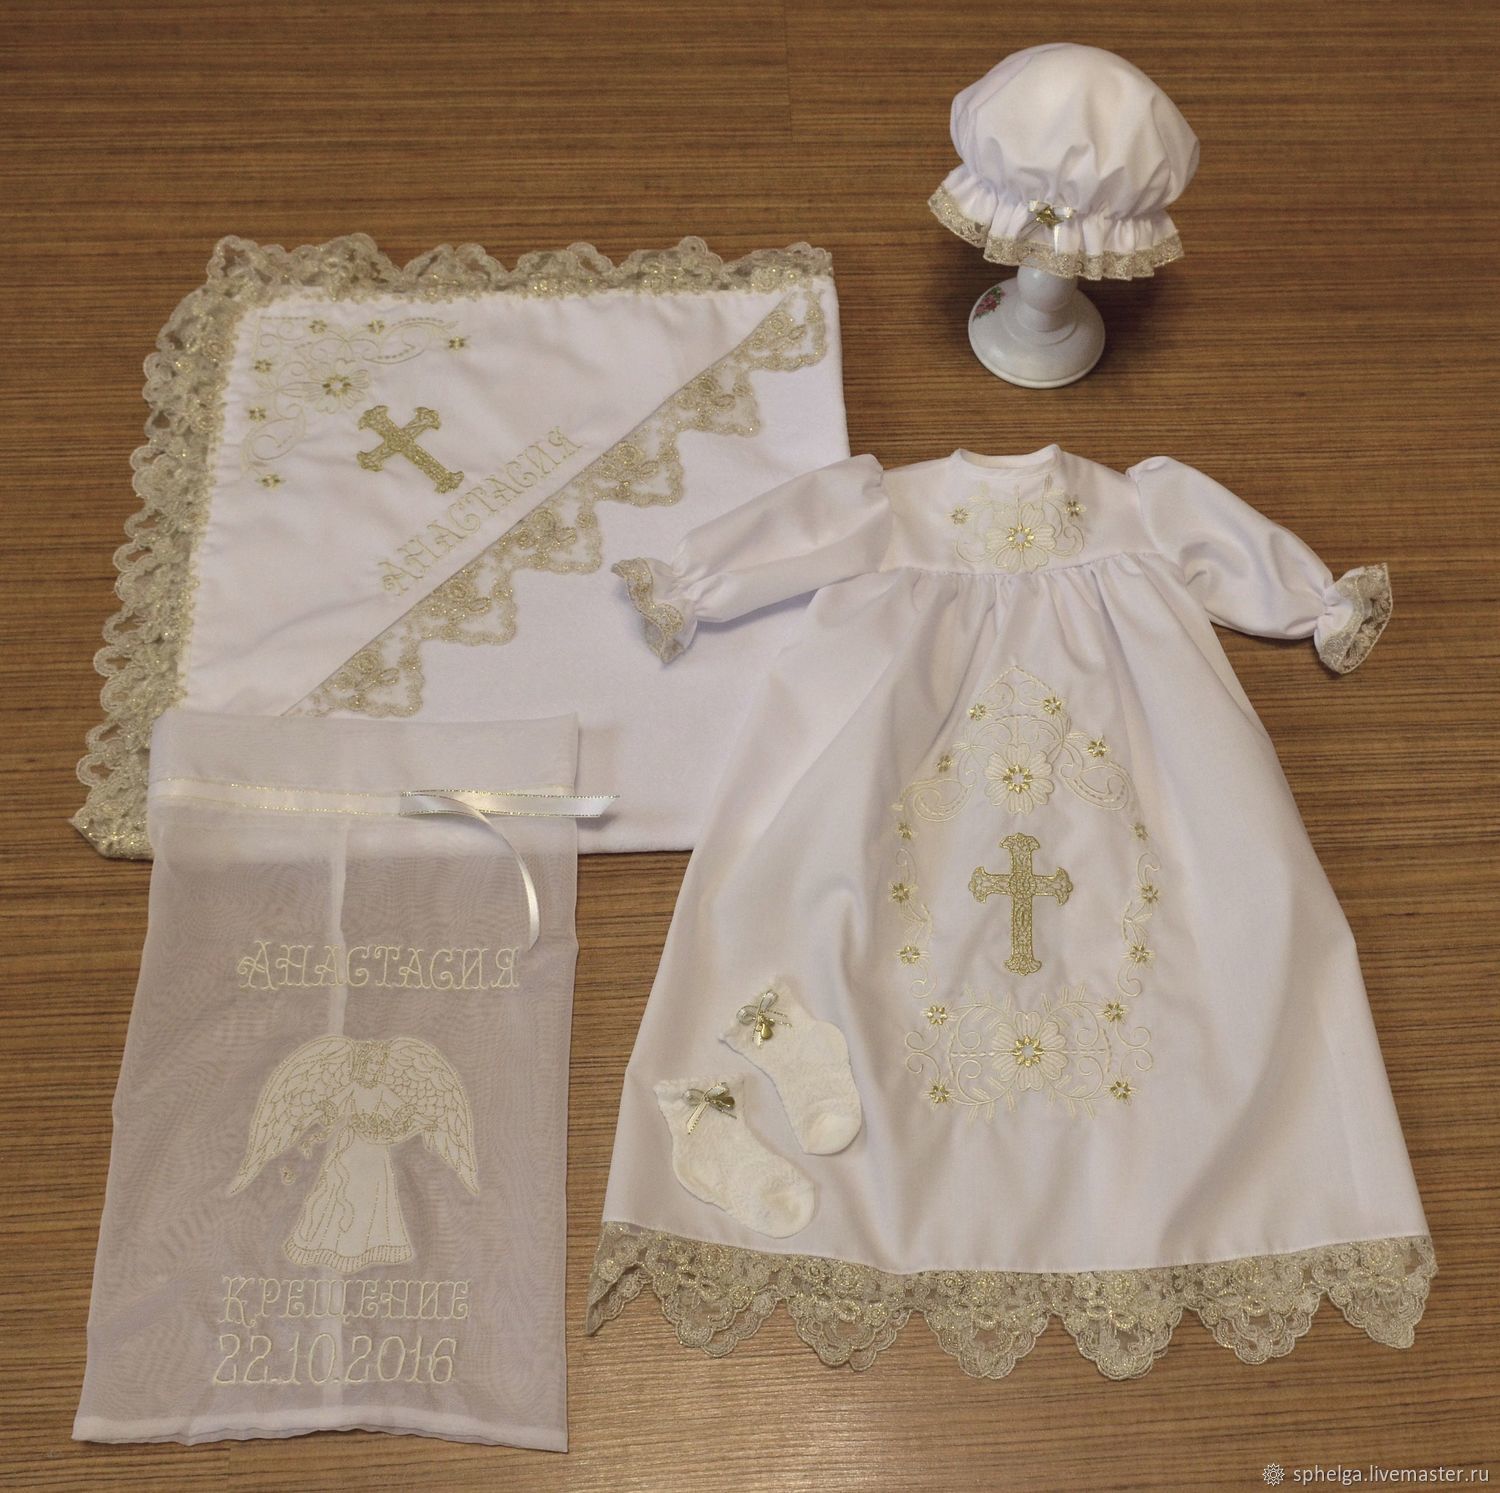 Наборы для крещения - купить одежду для крещения новорожденных в интернет-магазине BabyBay